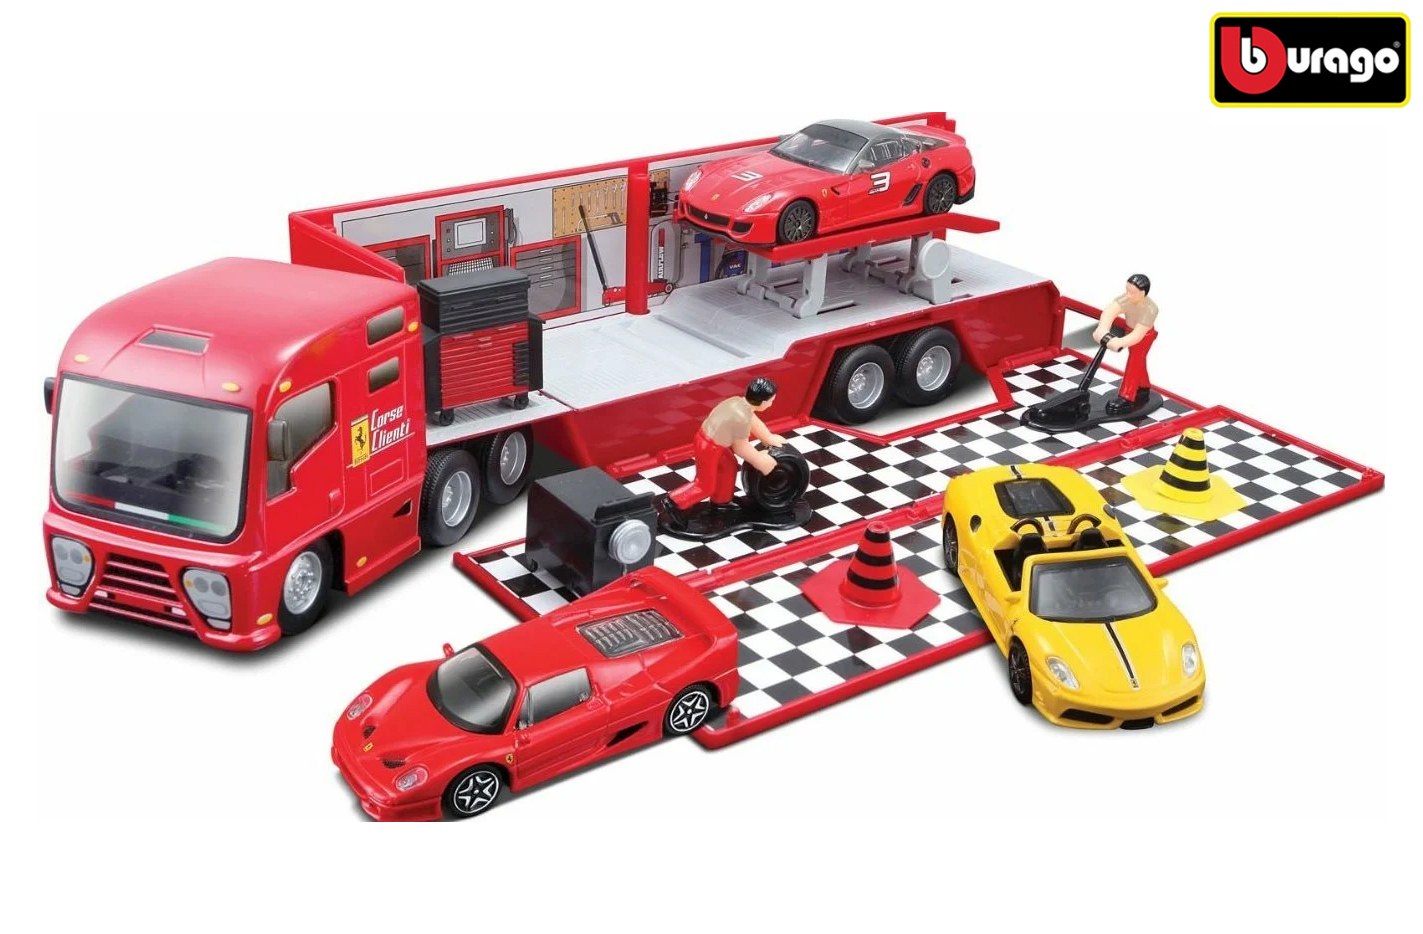 Bburago Auto s přívěsem s doplňky Ferrari Race & Play plast v krabici 1:43